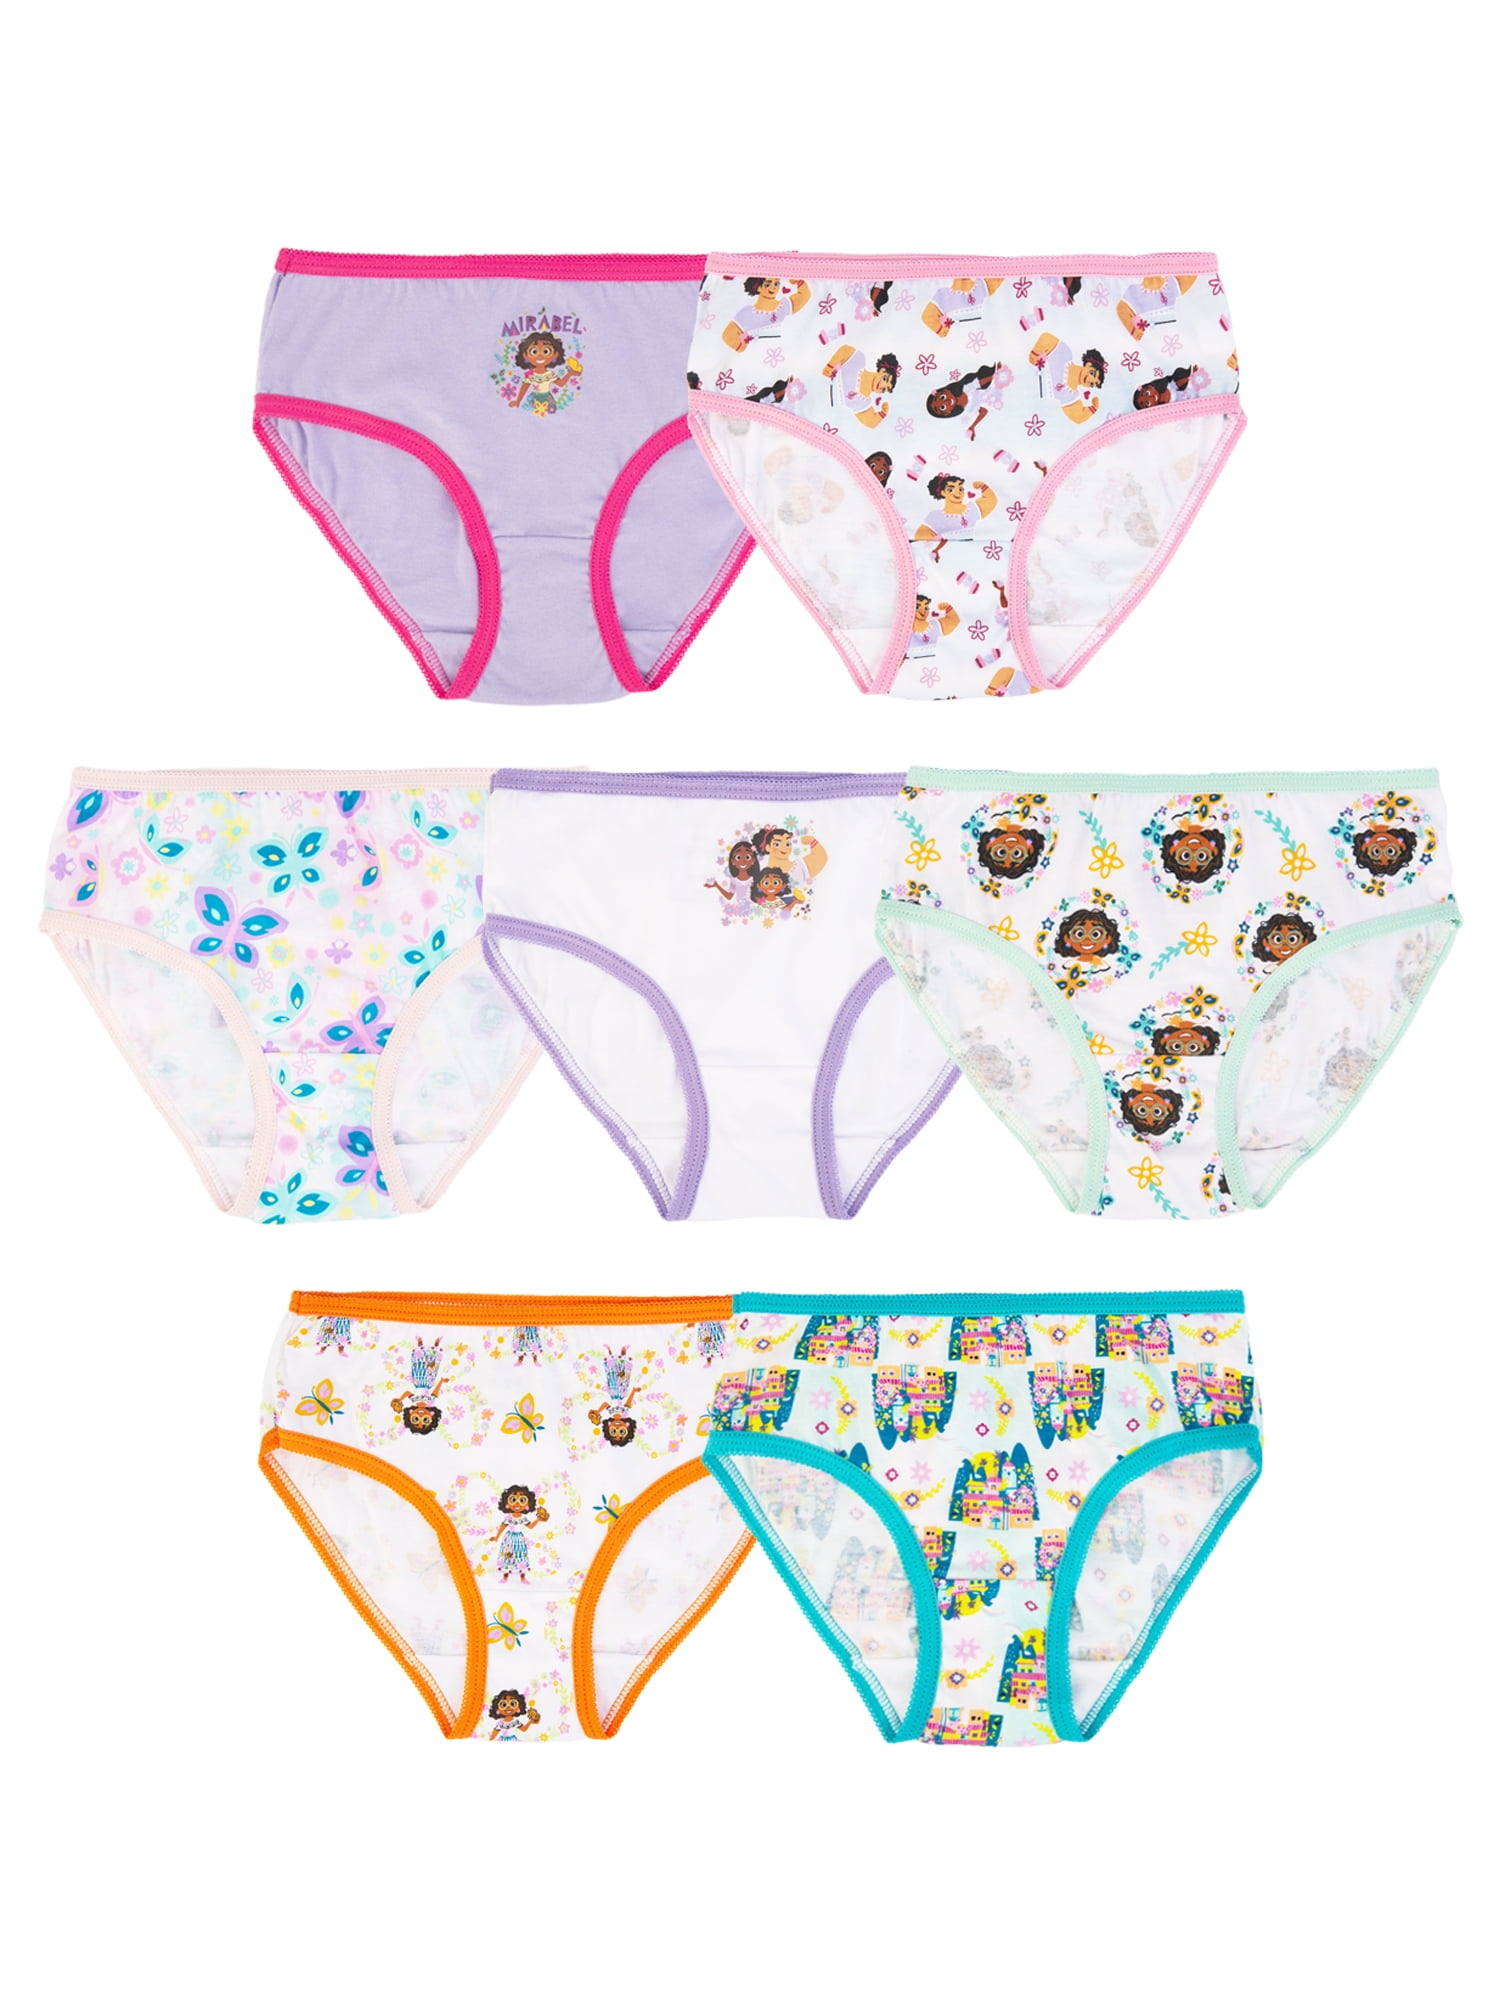 2-DREAMWORKS Trolls Girls 7 Pack Briefs Undies 4T Multicolor Underwear  Toddler нижнее белье V109723454 купить по выгодной цене в интернет-магазине   с доставкой